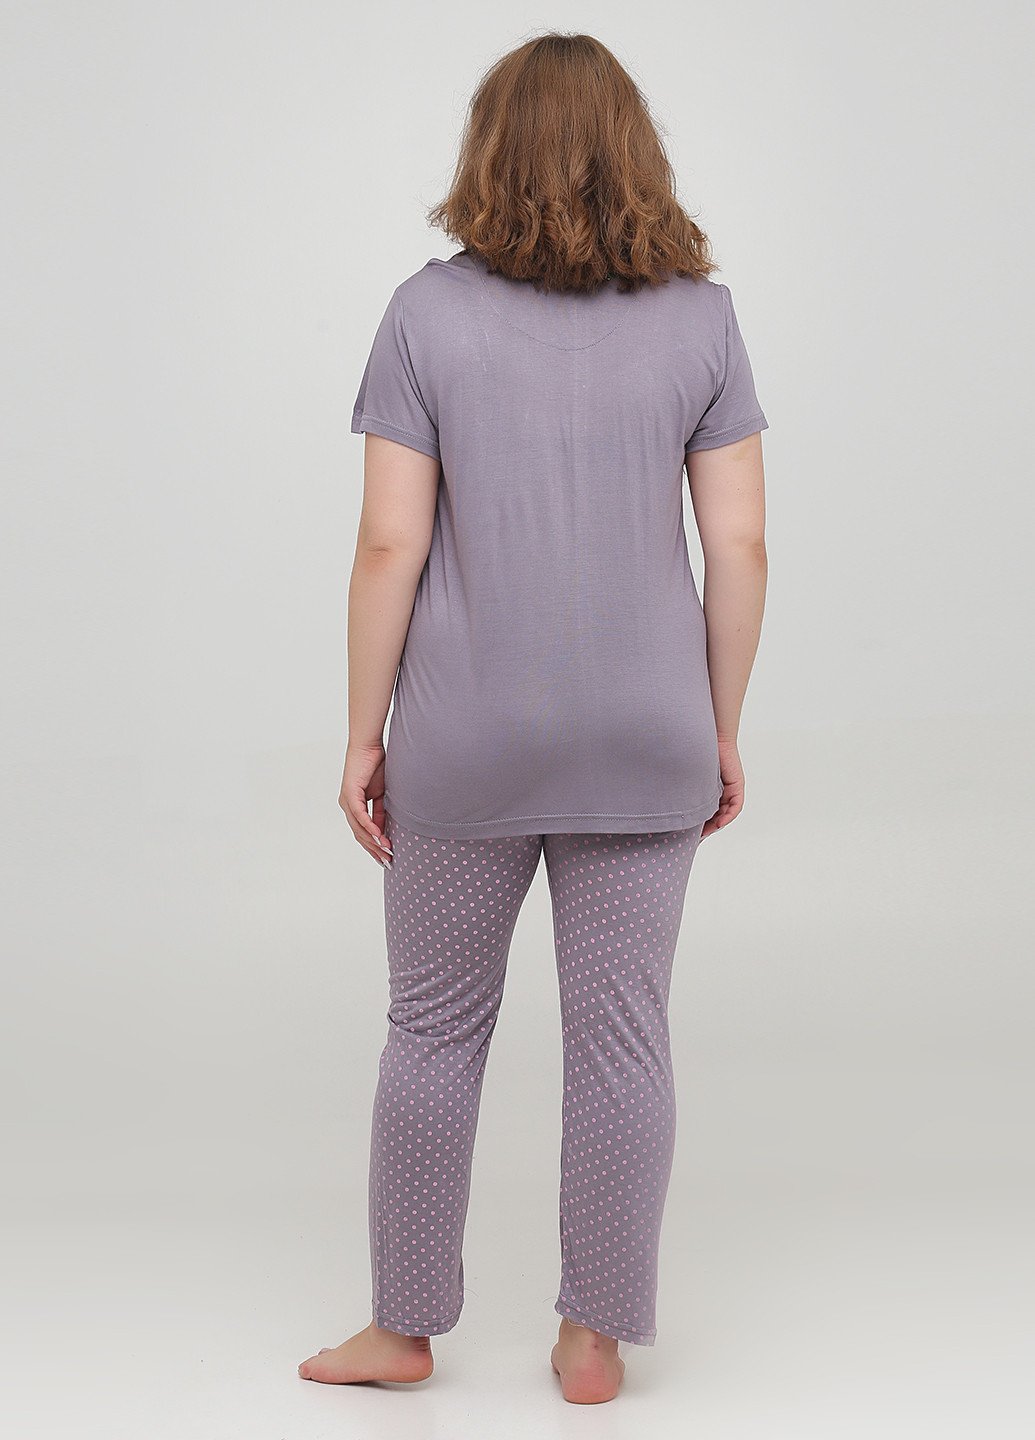 Сиреневая всесезон пижама (футболка, брюки) футболка + брюки Stil Moda